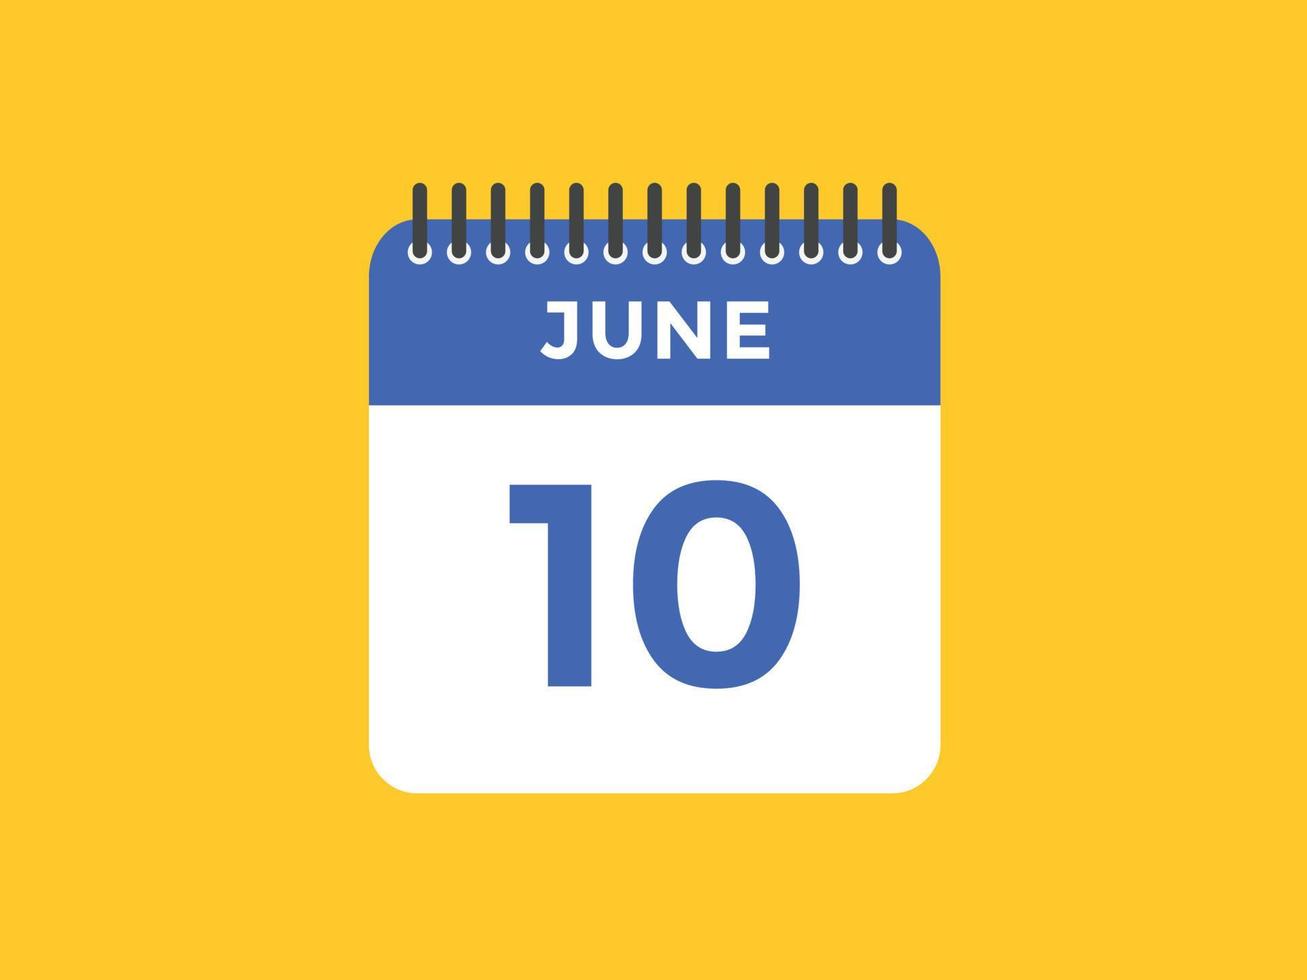 lembrete de calendário de 10 de junho. 10 de junho modelo de ícone de calendário diário. modelo de design de ícone de calendário 10 de junho. ilustração vetorial vetor